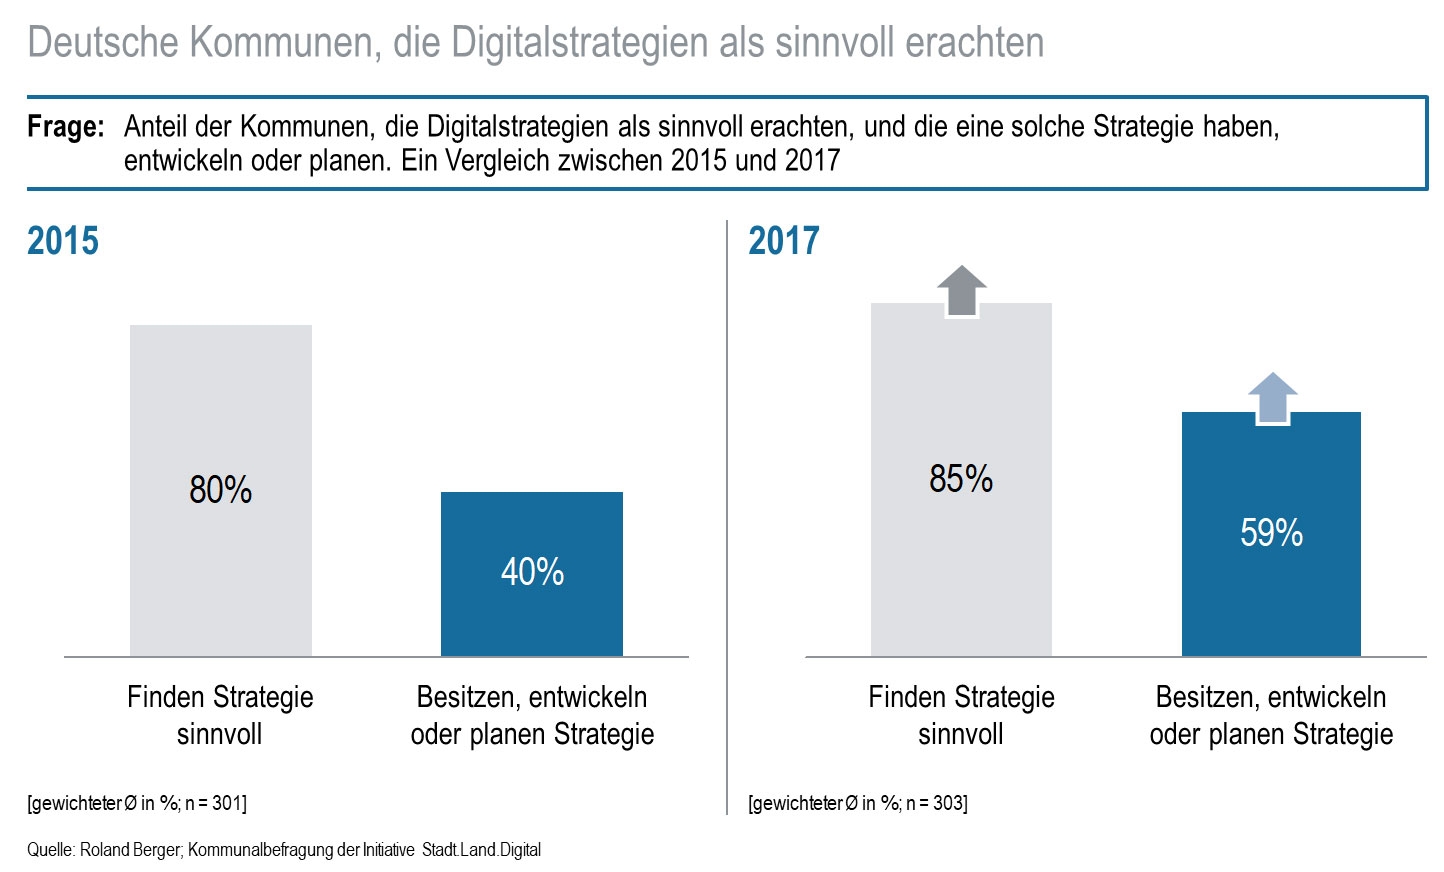 Anteil der Kommunen, die Digitalstrategien als sinnvoll erachten, steigt (Vergleich zwischen 2015 und 2017)